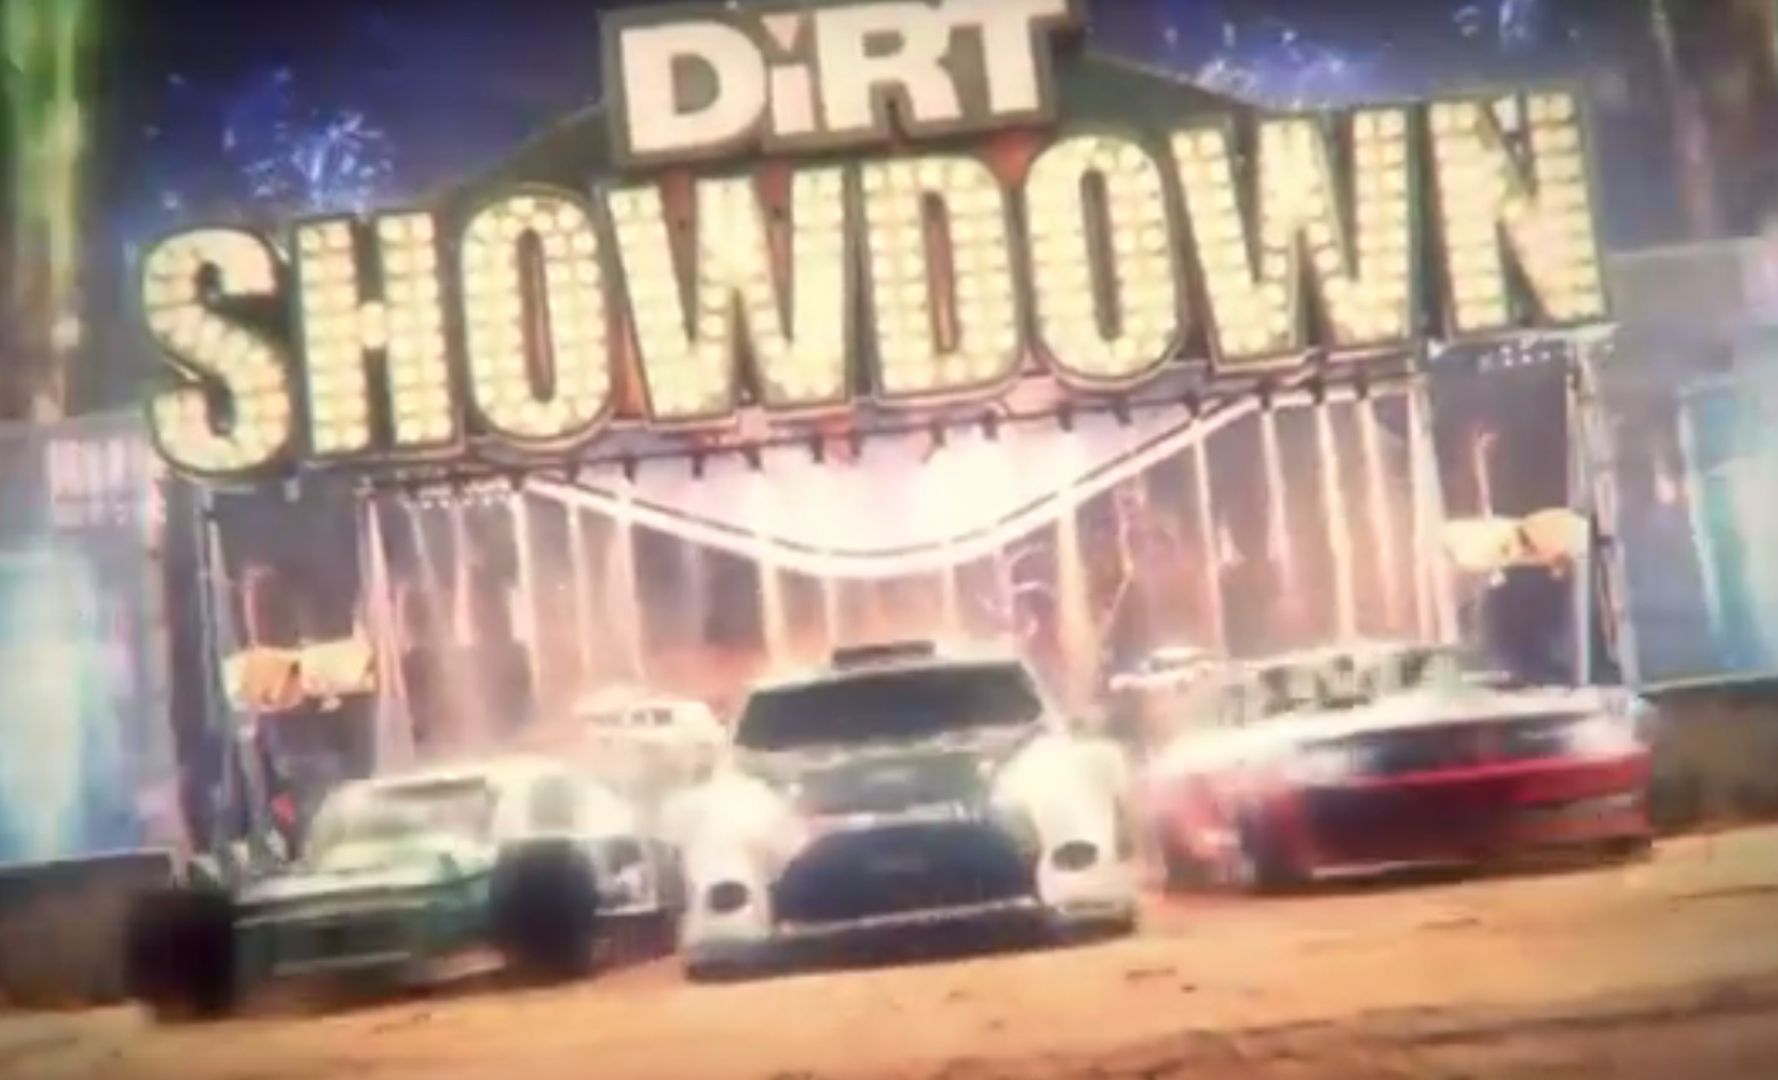 Dirt Showdown za darmo. Zobacz, gdzie pobrać